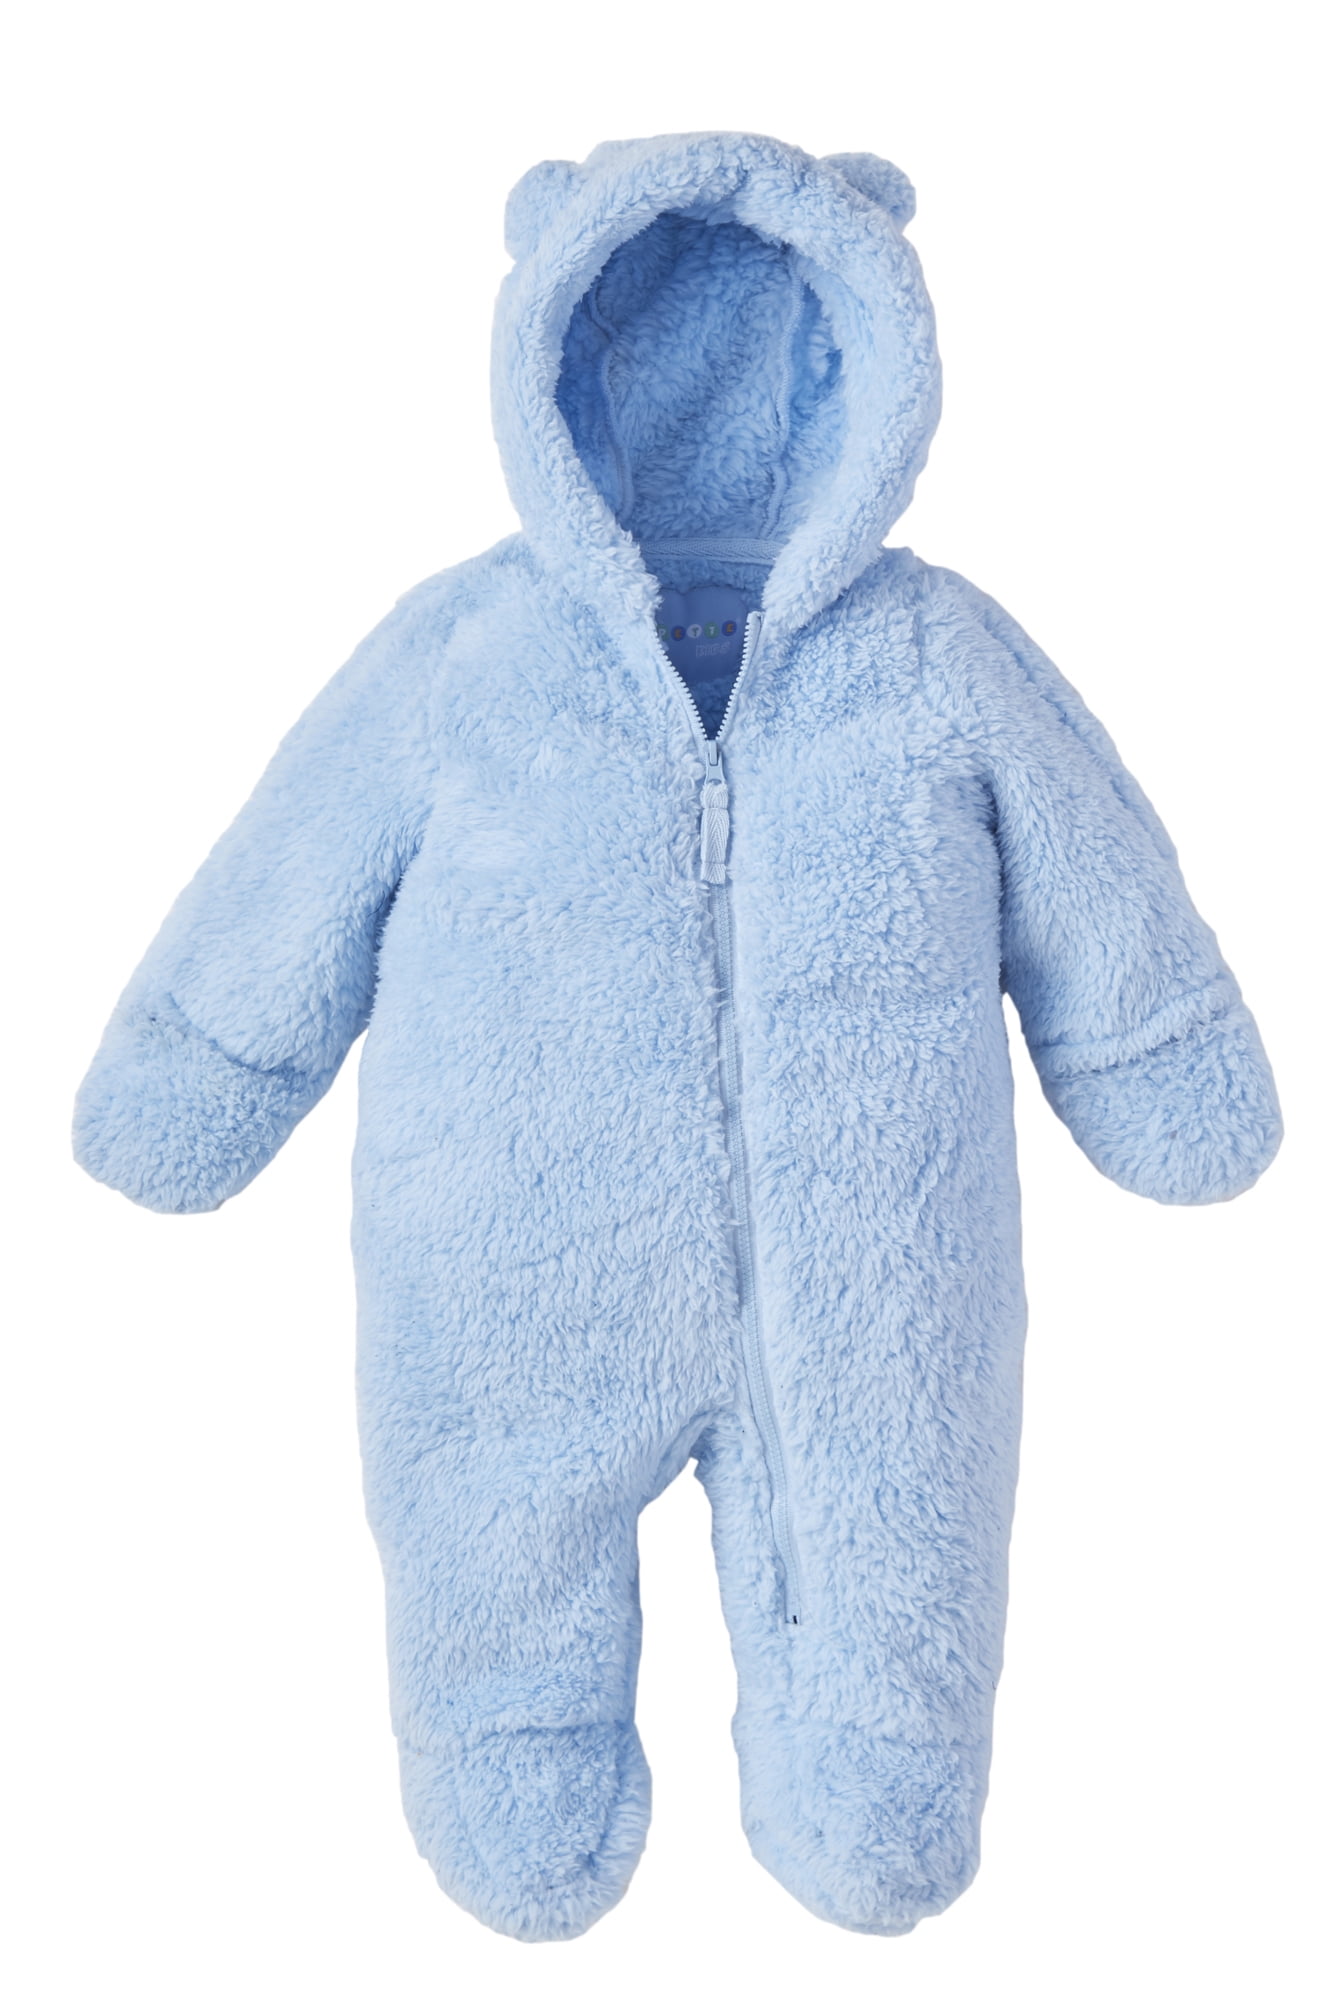 Rothschild Infant Boys Blue & Gray Bubble Pram/Snowsuit Size 3/6M 6/9M 12M 